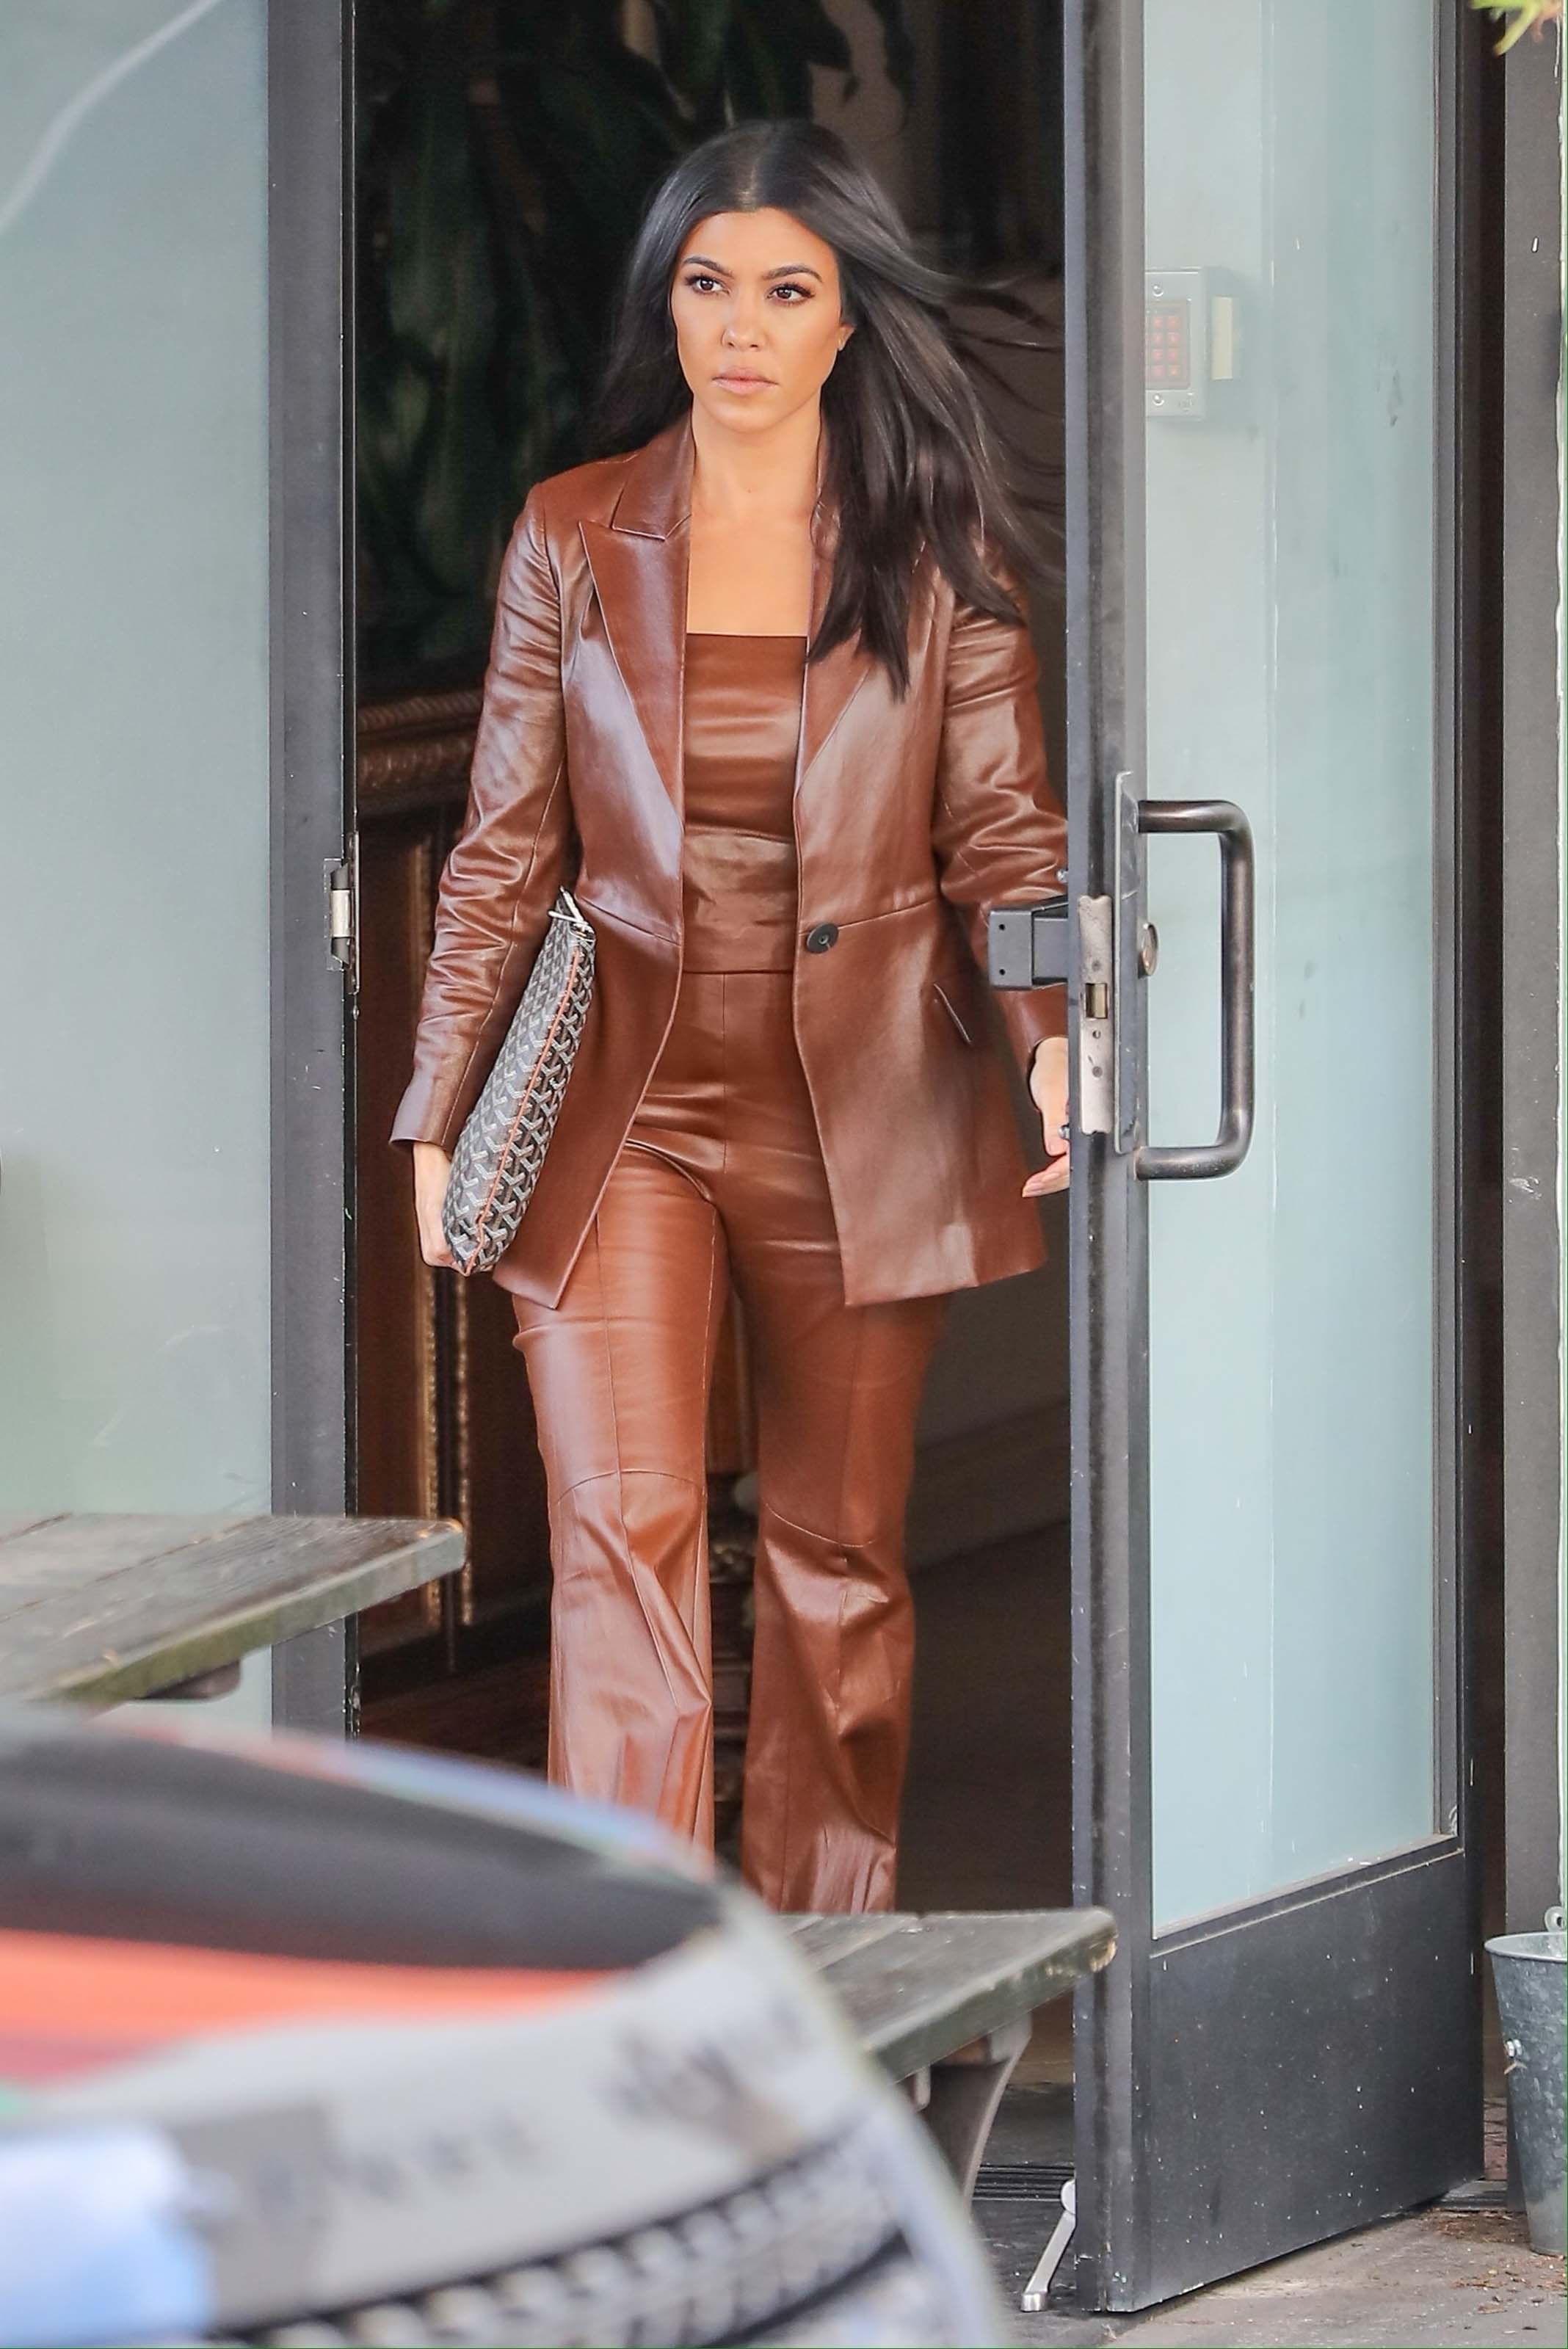 Kourtney Kardashian is all business